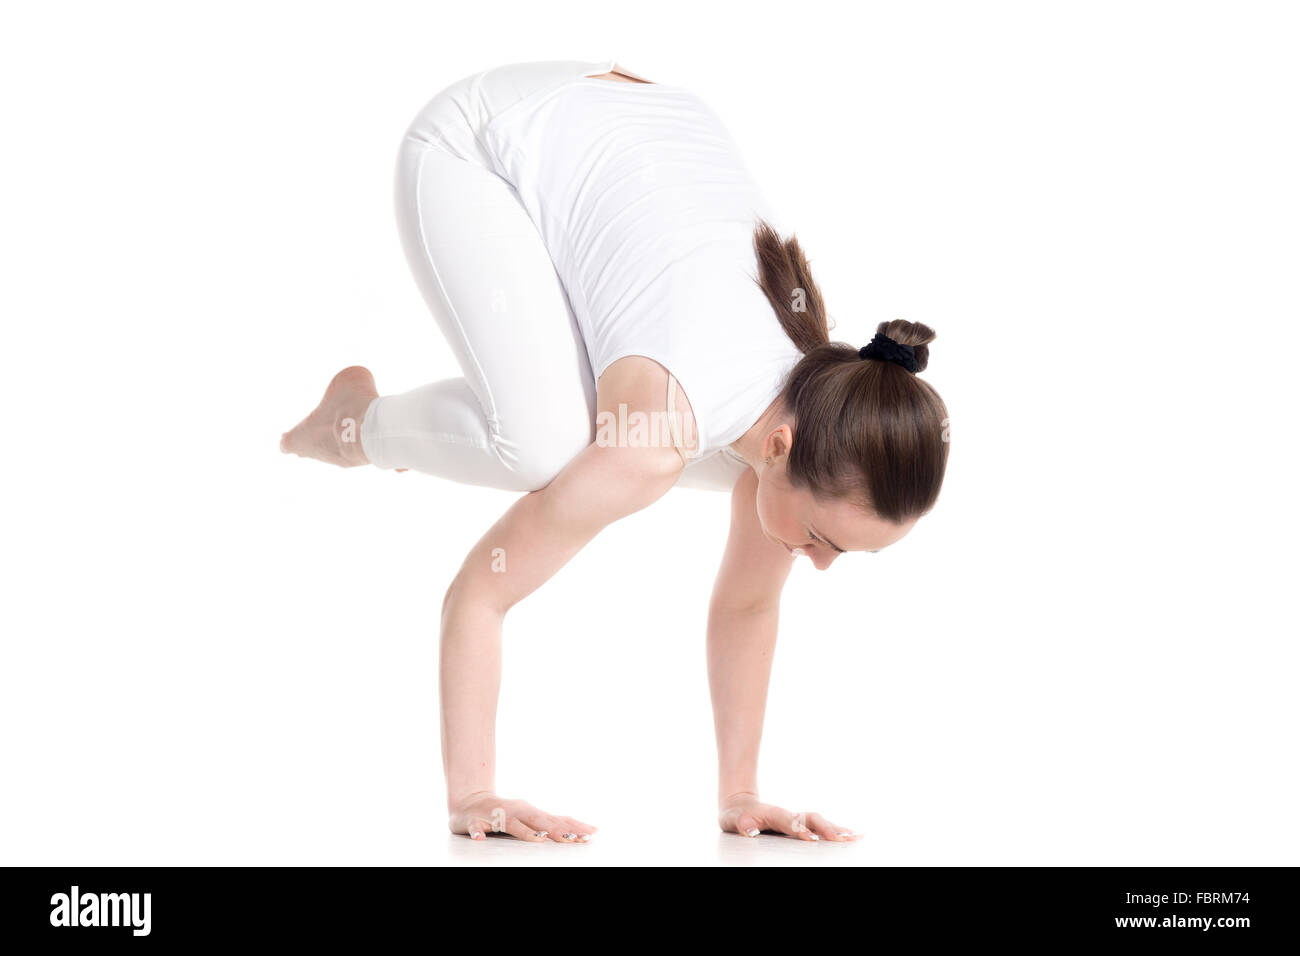 Sportlich schöne junge Frau in weißen Sportbekleidung machen Handstand Yoga Asana, Übung für Armkraft, Kran (Krähe)-Pose Stockfoto